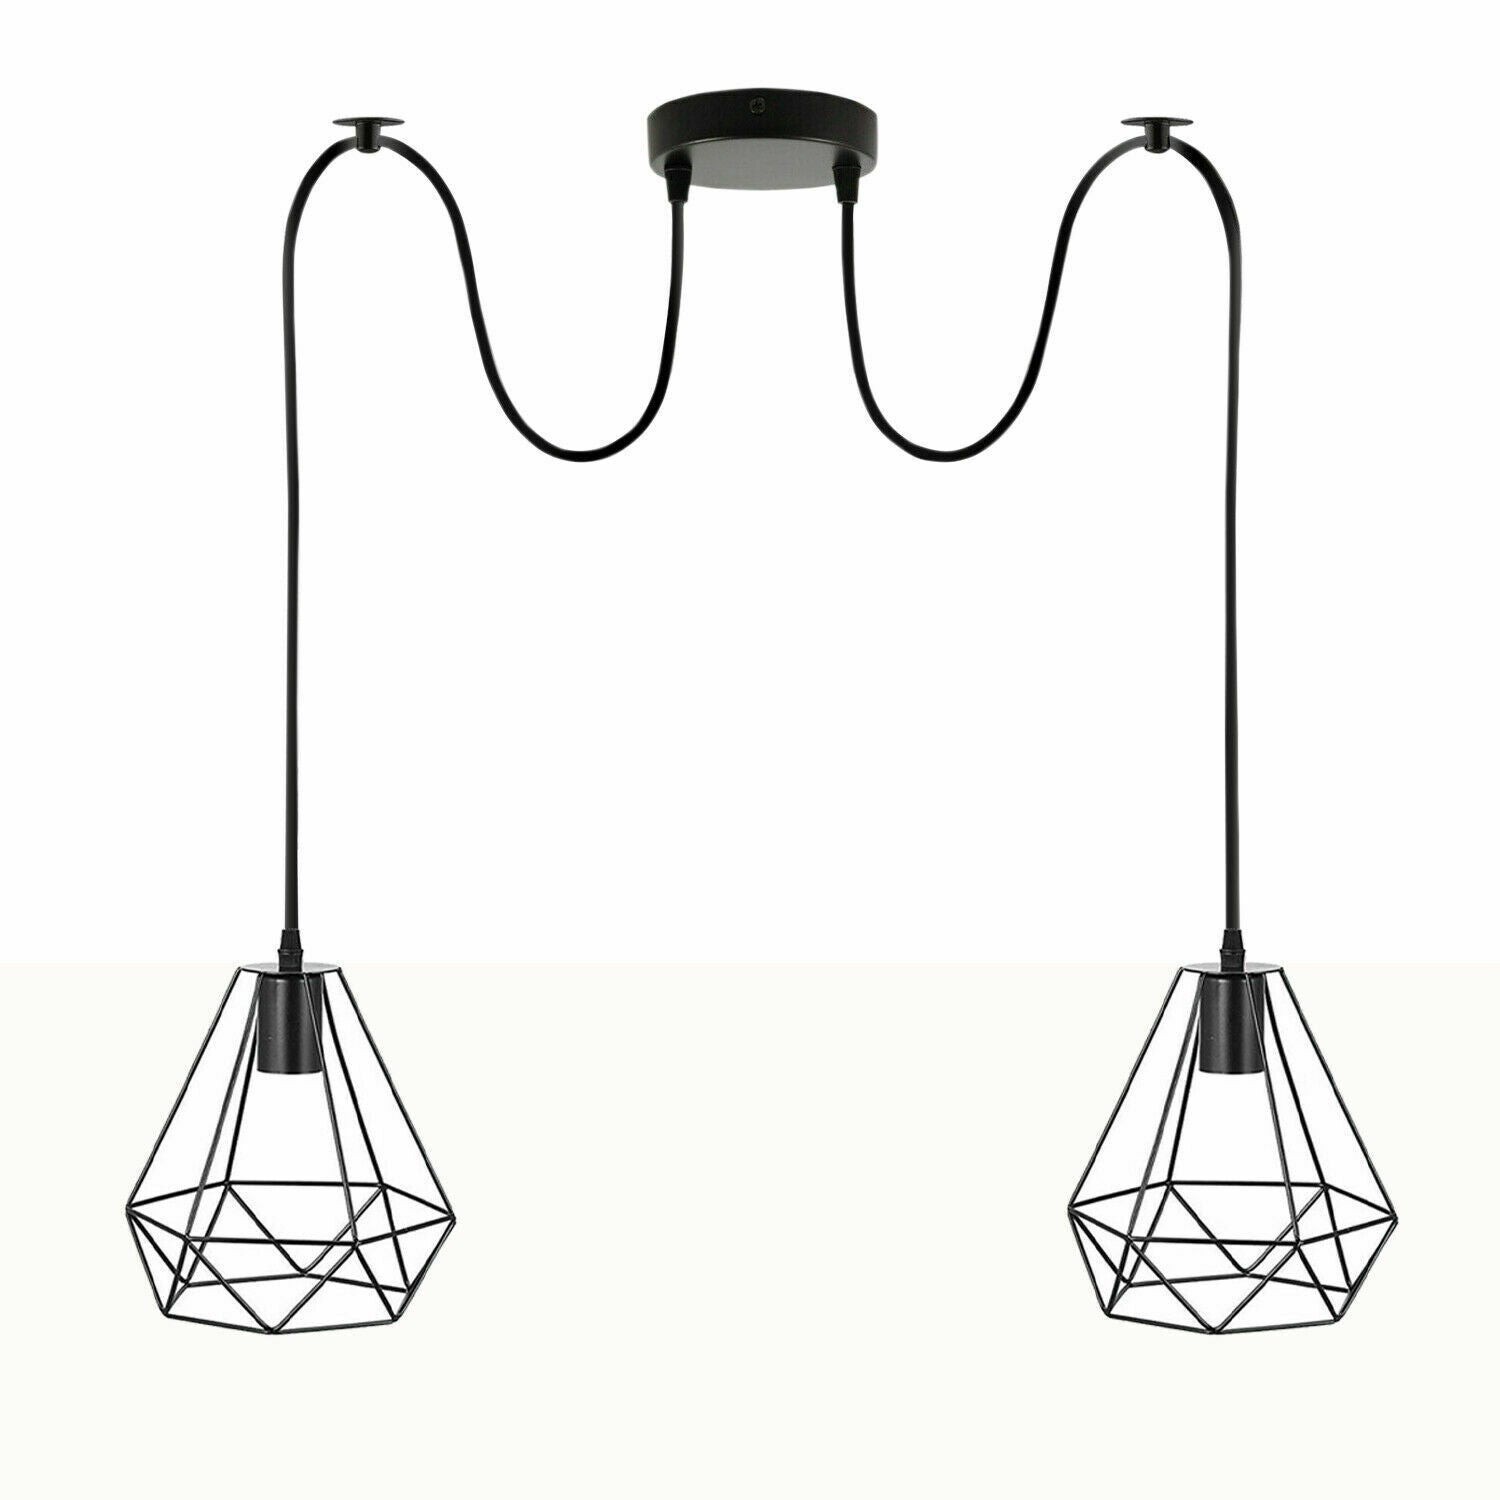 LEDSone Industrial Vintage Lampe Retro-Stil Deckenleuchte Verschiedene Spinnenlampe Pendelleuchte Kronleuchter E27 ~